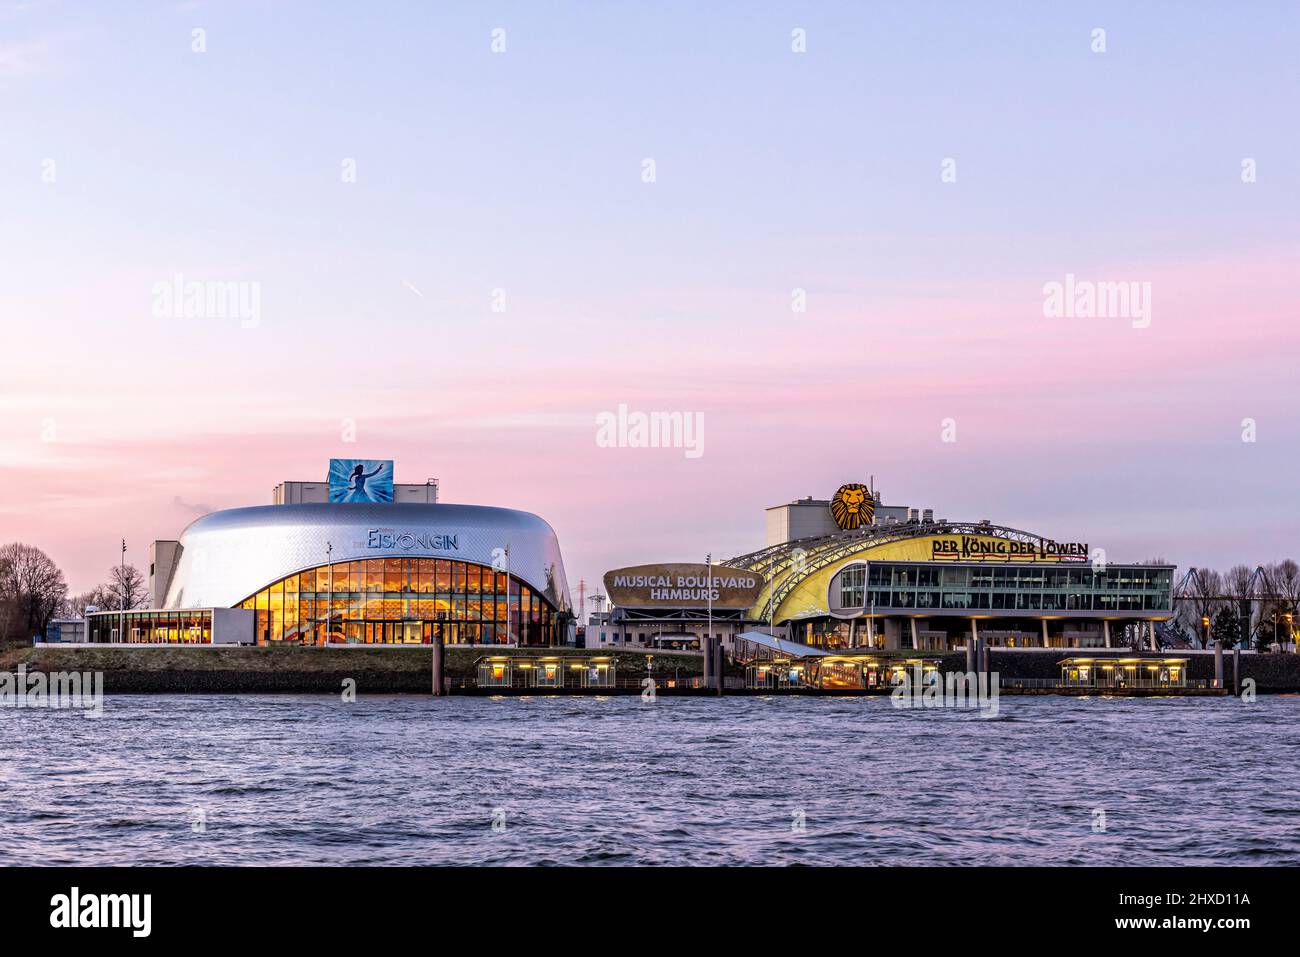 Théâtre musical dans le port sur les rives de l'Elbe, Hambourg, Allemagne Banque D'Images